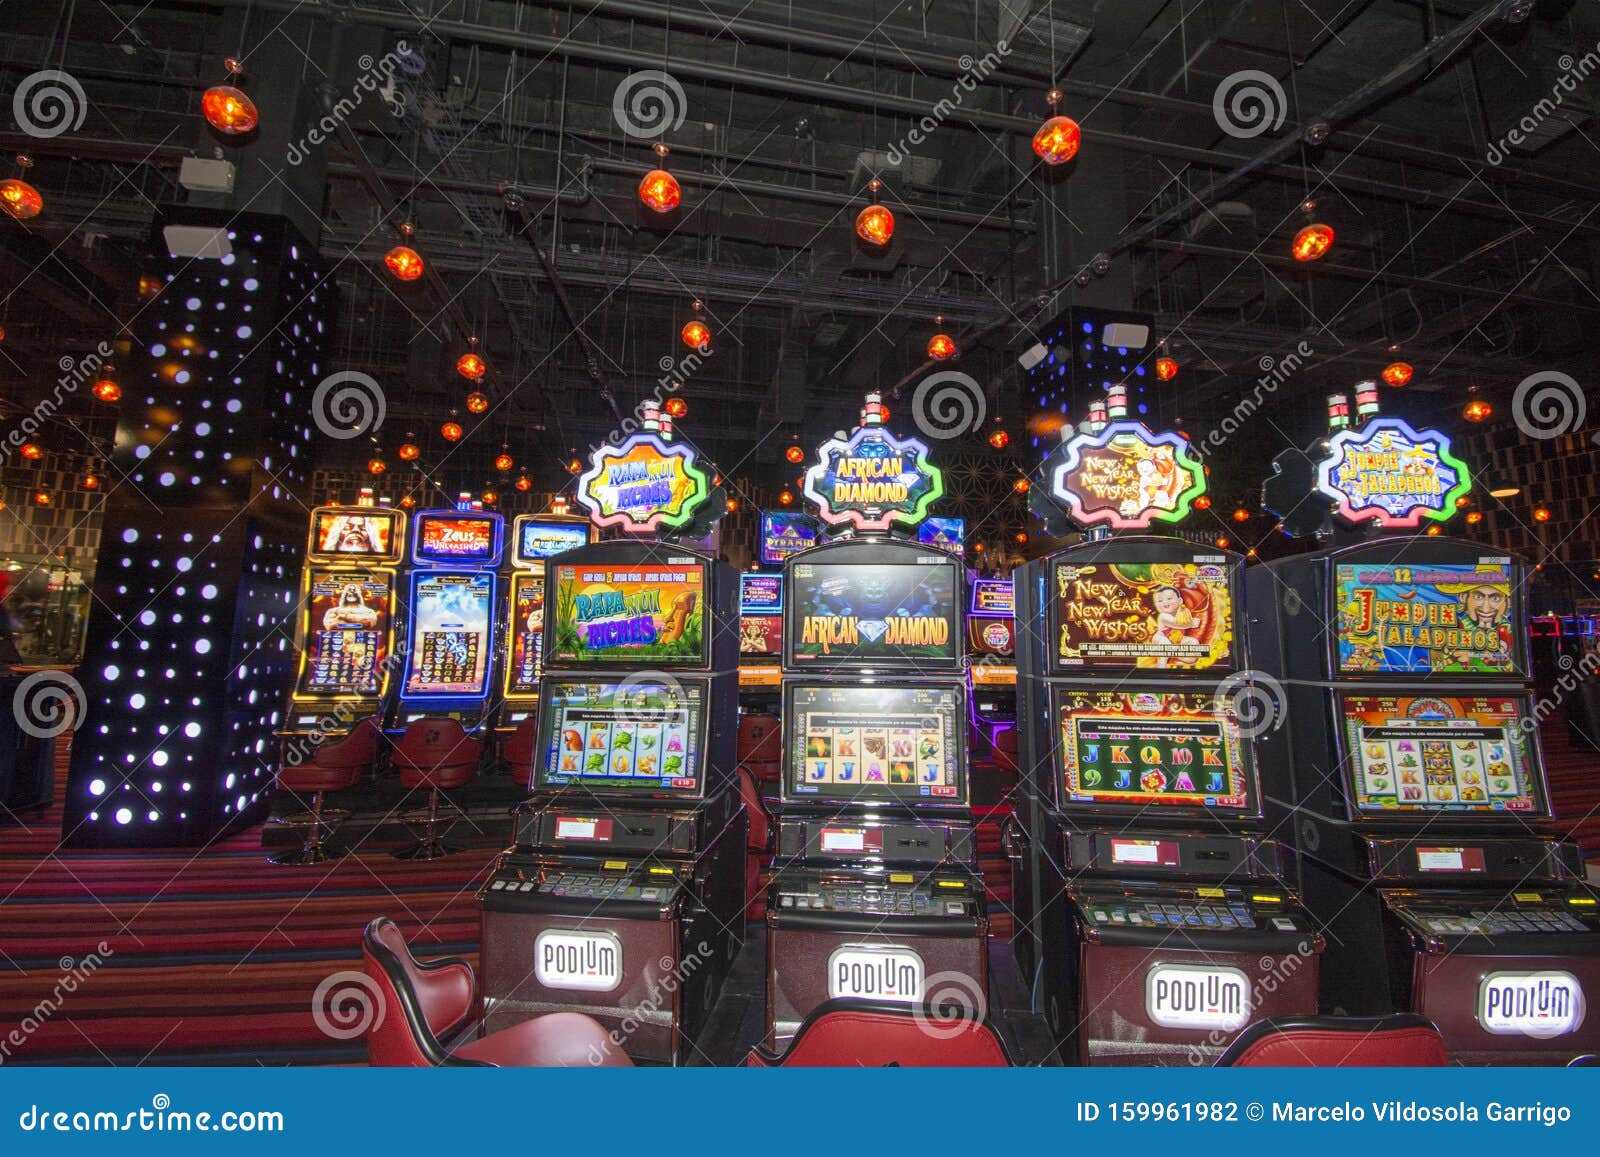 ¿Qué puede enseñarte Instagram sobre casinos online legales en chile